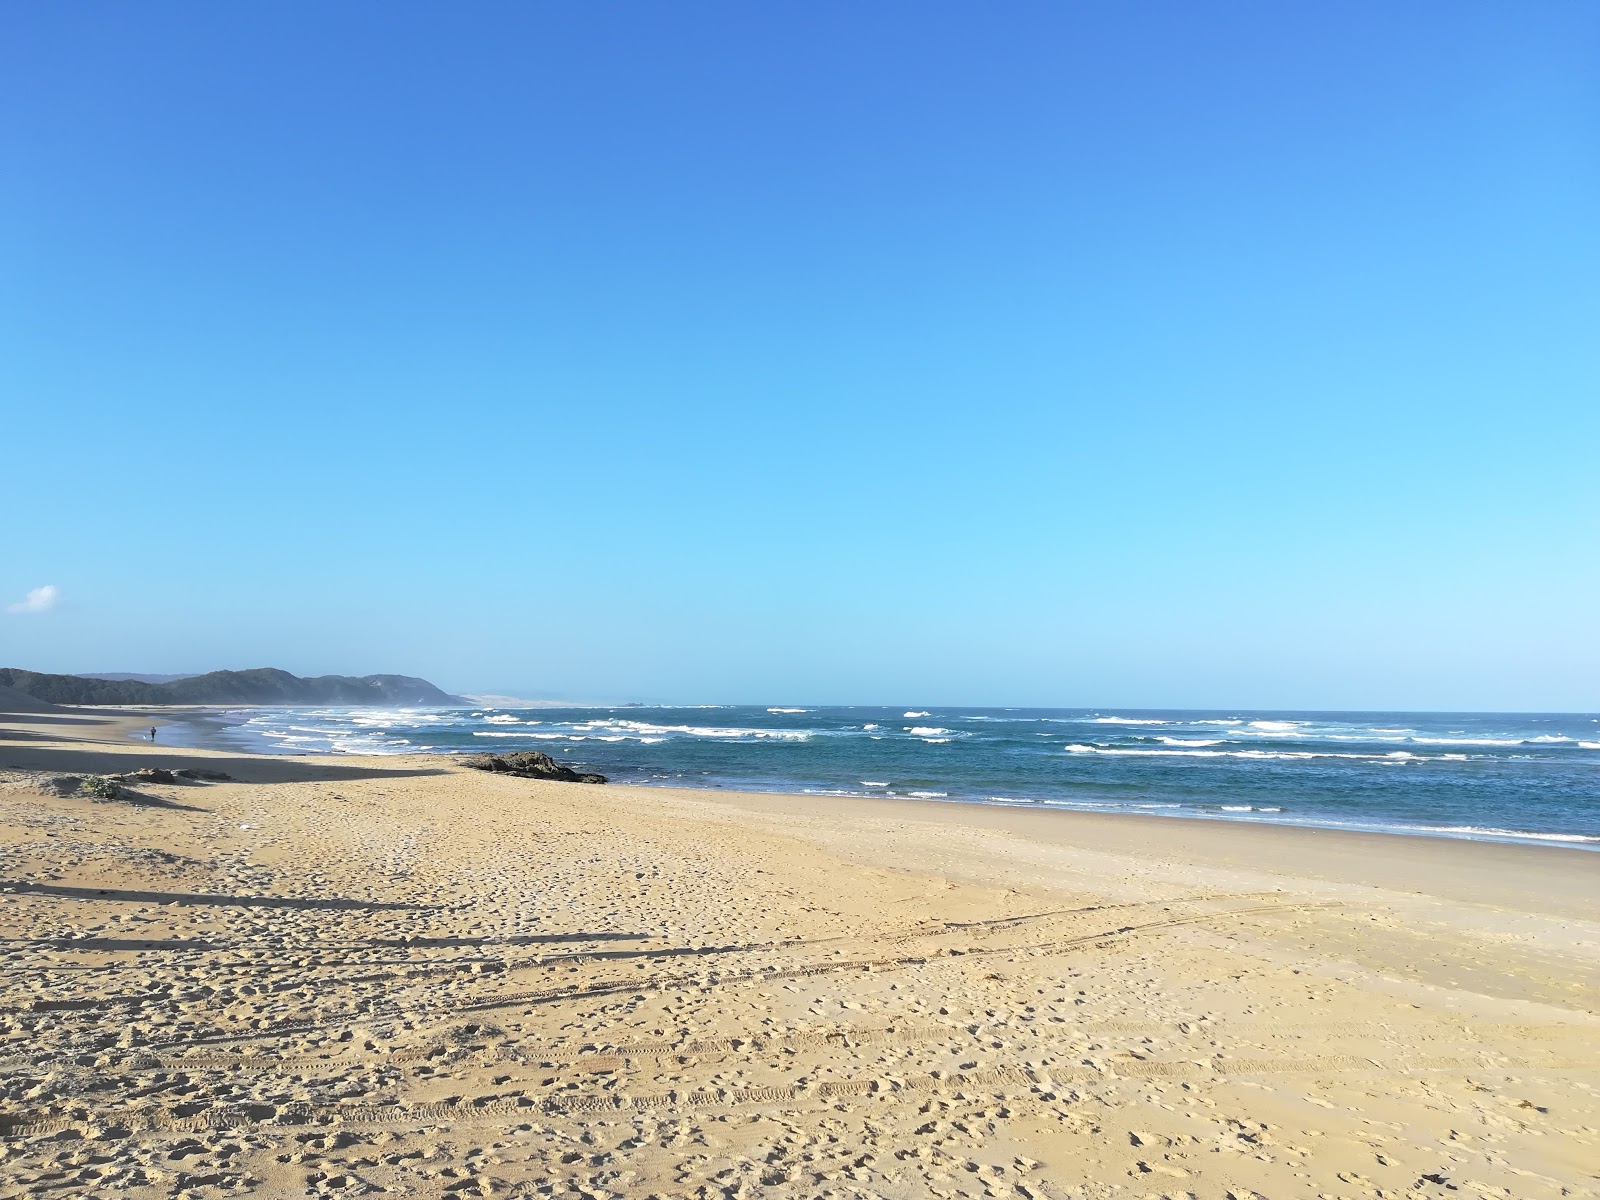 Zdjęcie Middle beach z przestronna plaża